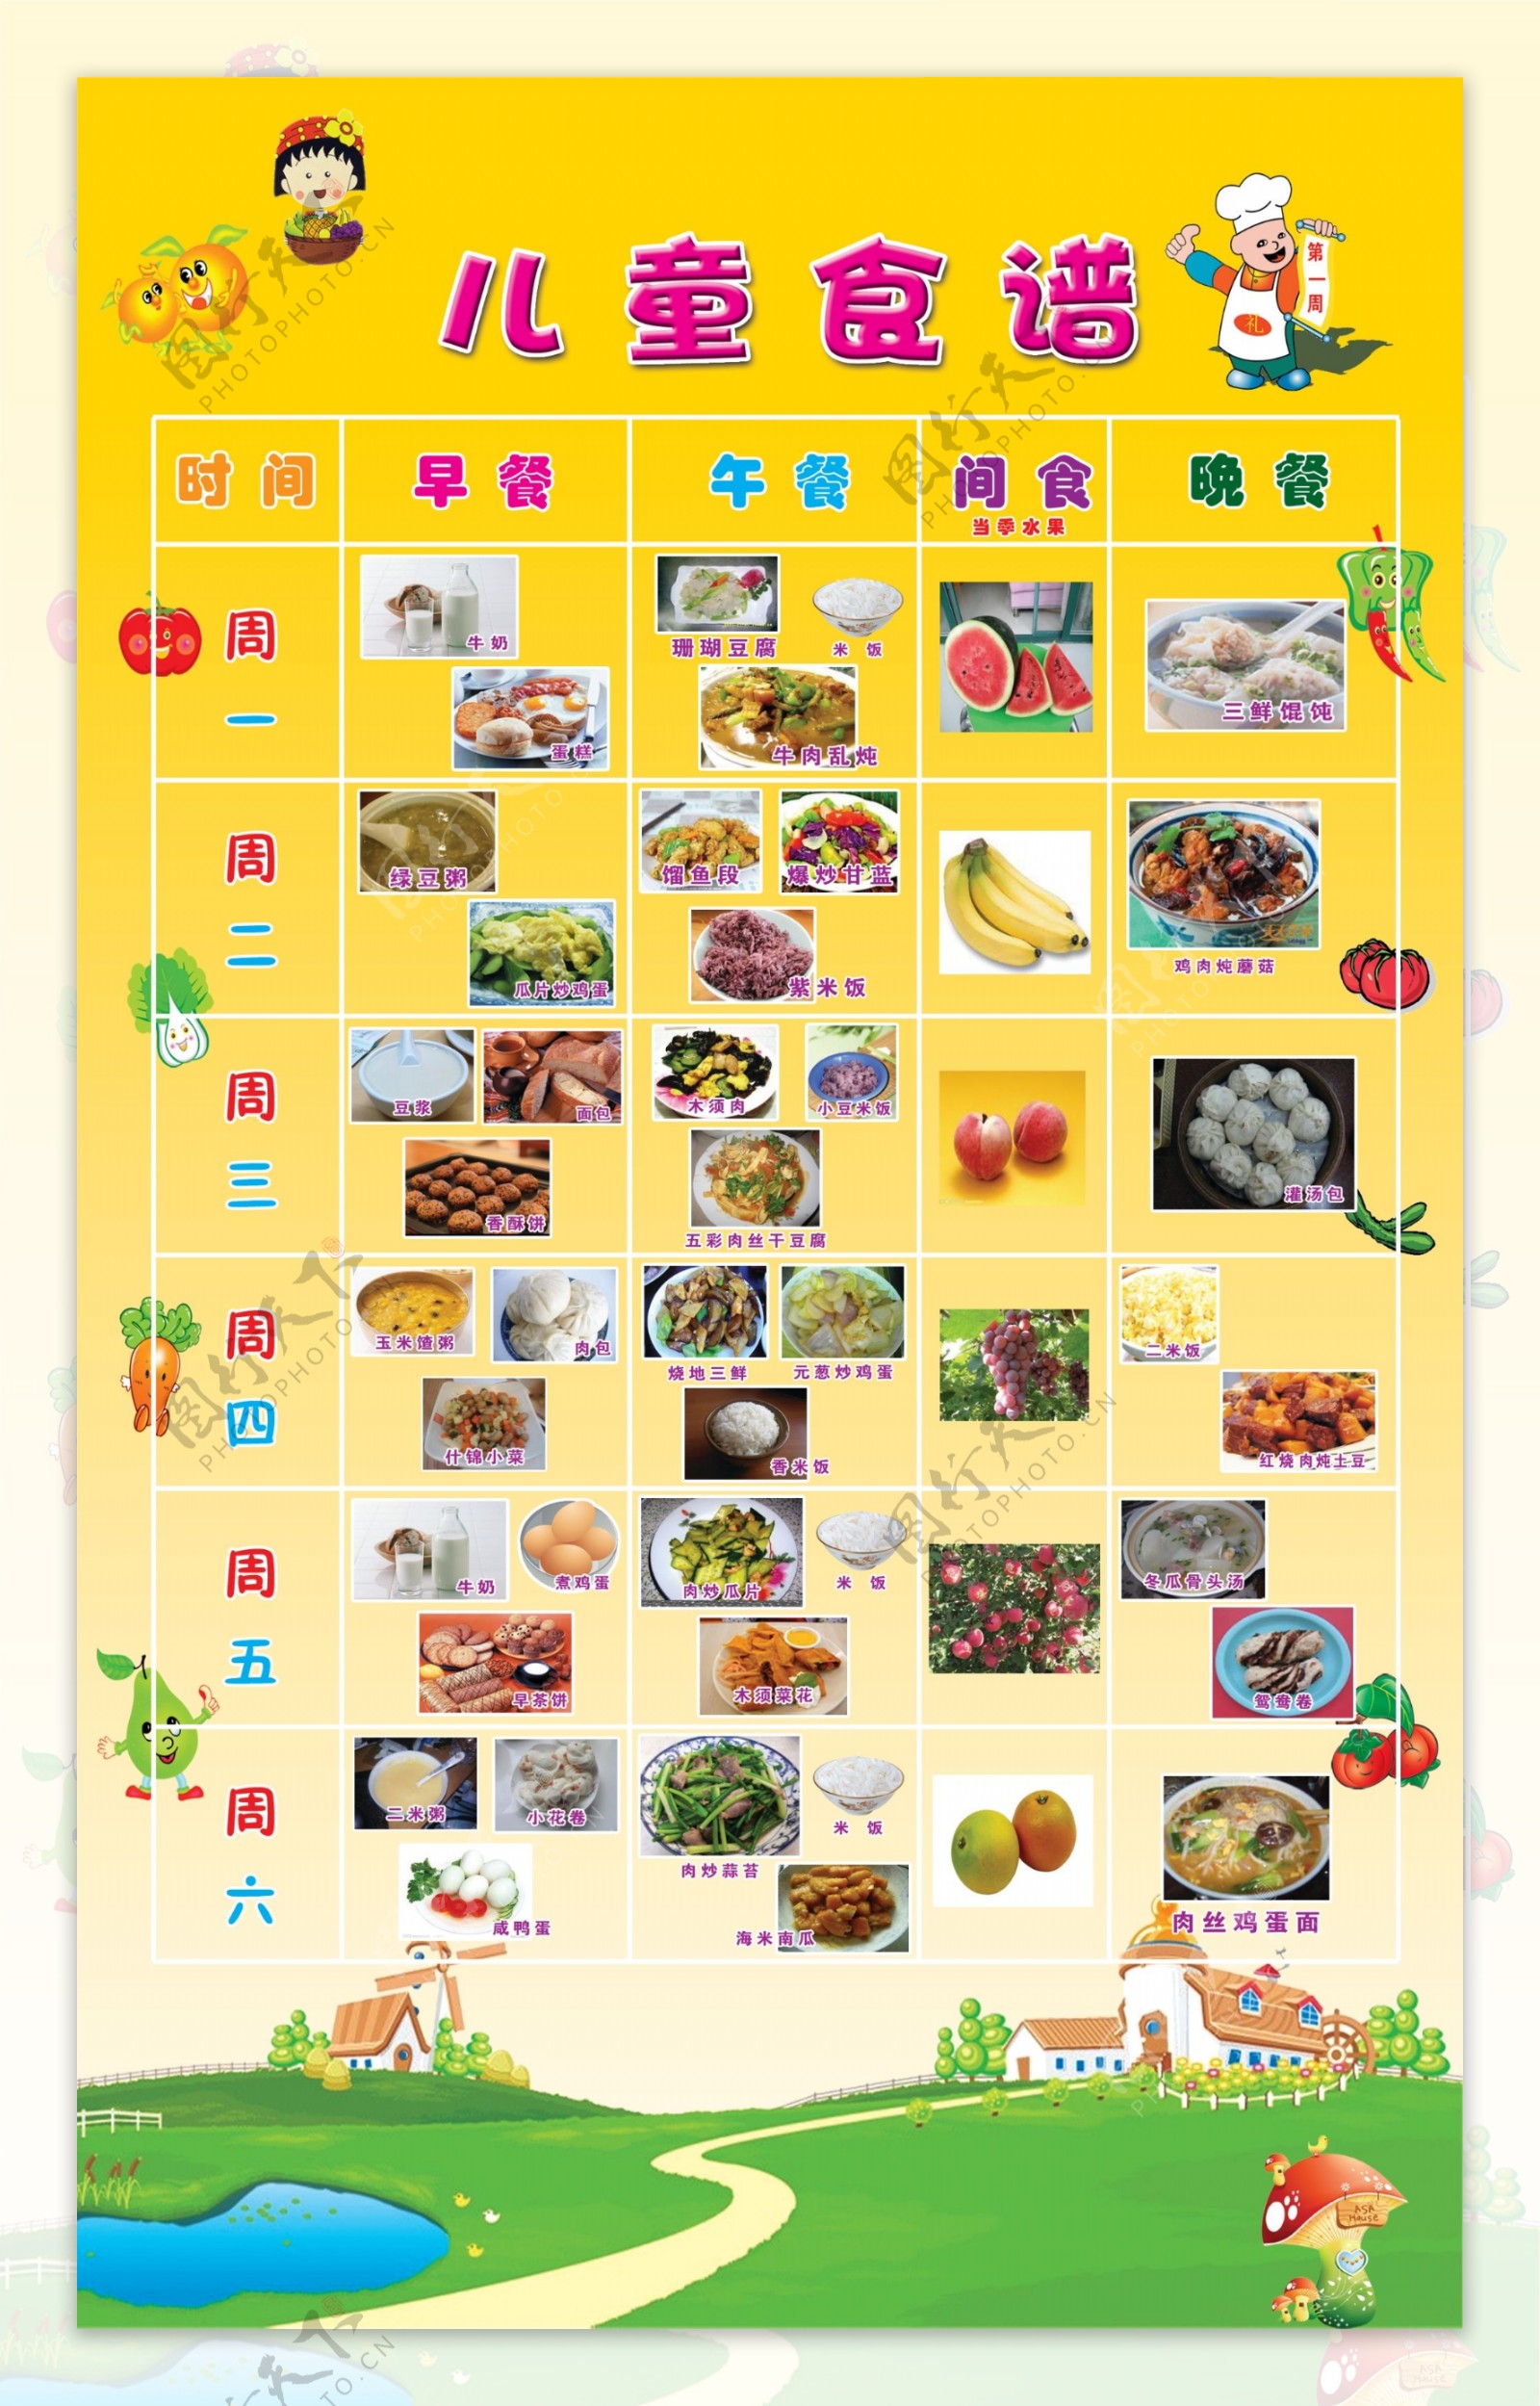 2014年10月22日幼儿每日菜谱照片 - 每日菜谱照片 - 杭州京江幼儿园